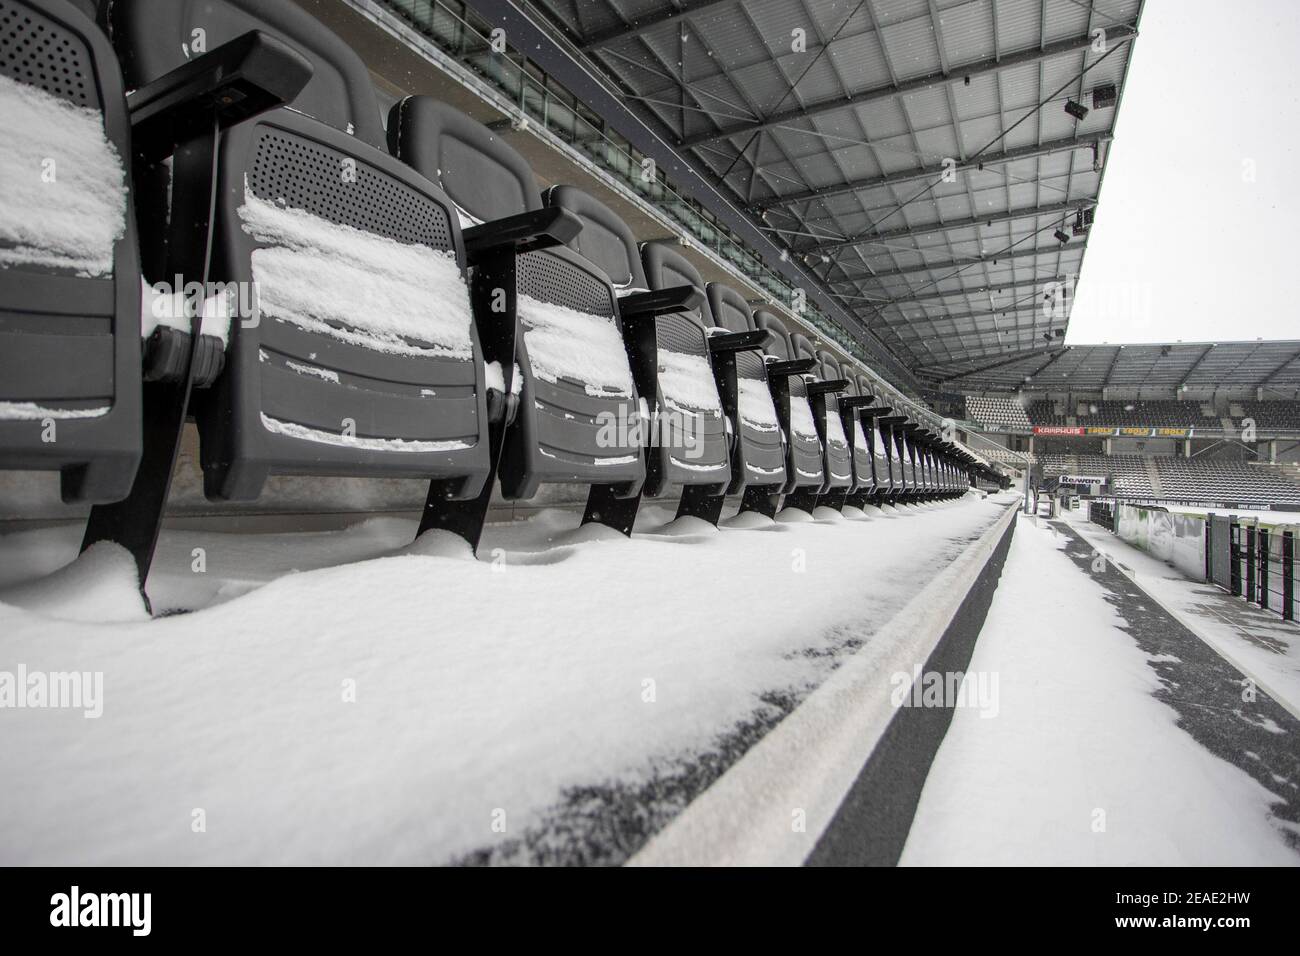 08-02-2021: News : Winter in de Erve Asito Business Seats bedolven onder sneeuw Nederland was in de maand februari 2021 in de Ban van een koudegol Stockfoto